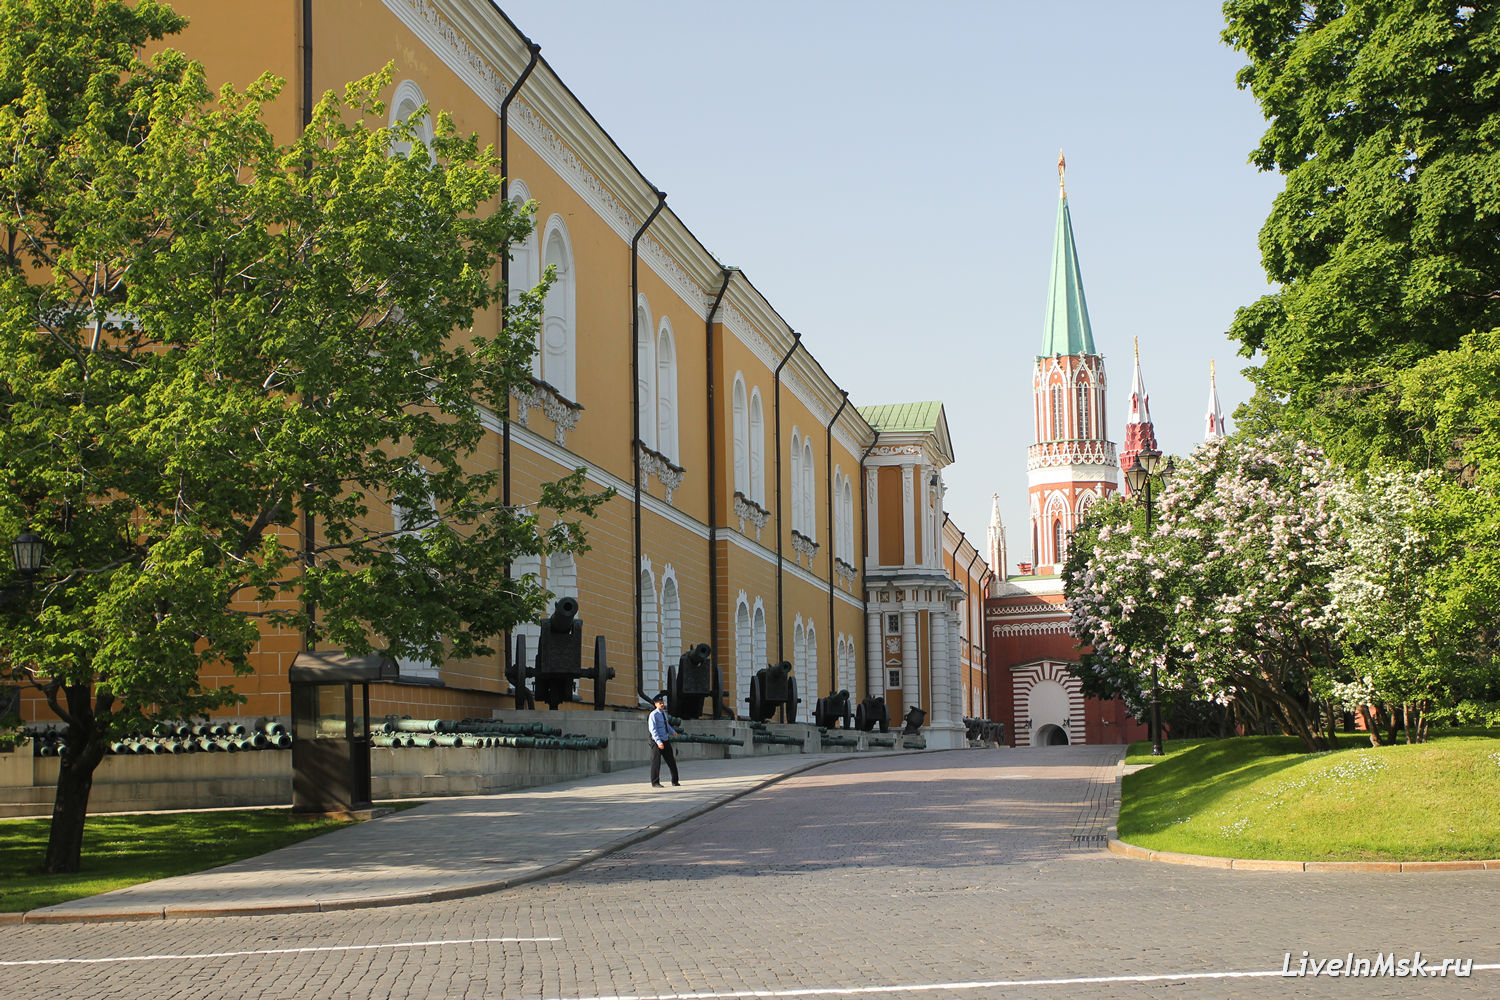 Сенатская площадь Московского Кремля, фото 2016 года